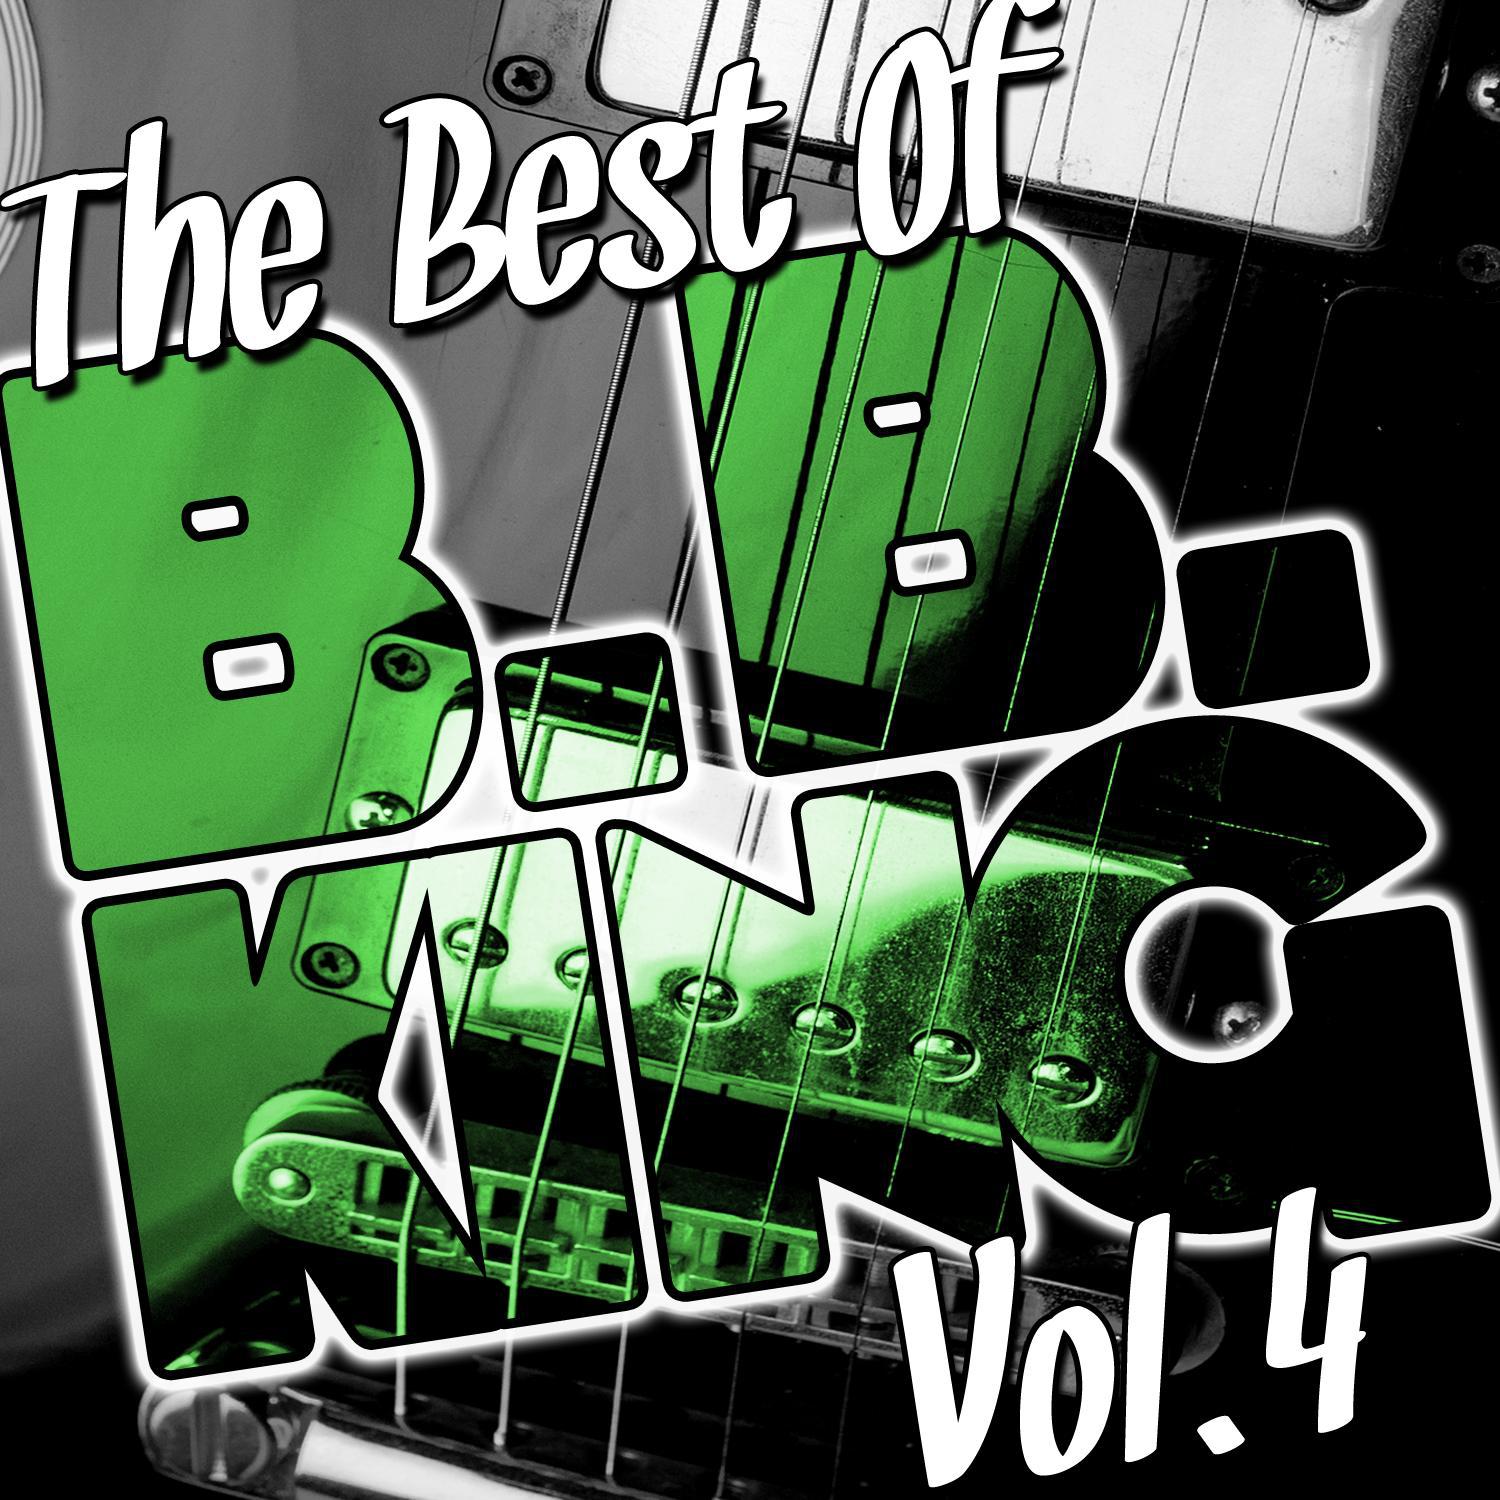 The Best of B.B. King Vol. 4